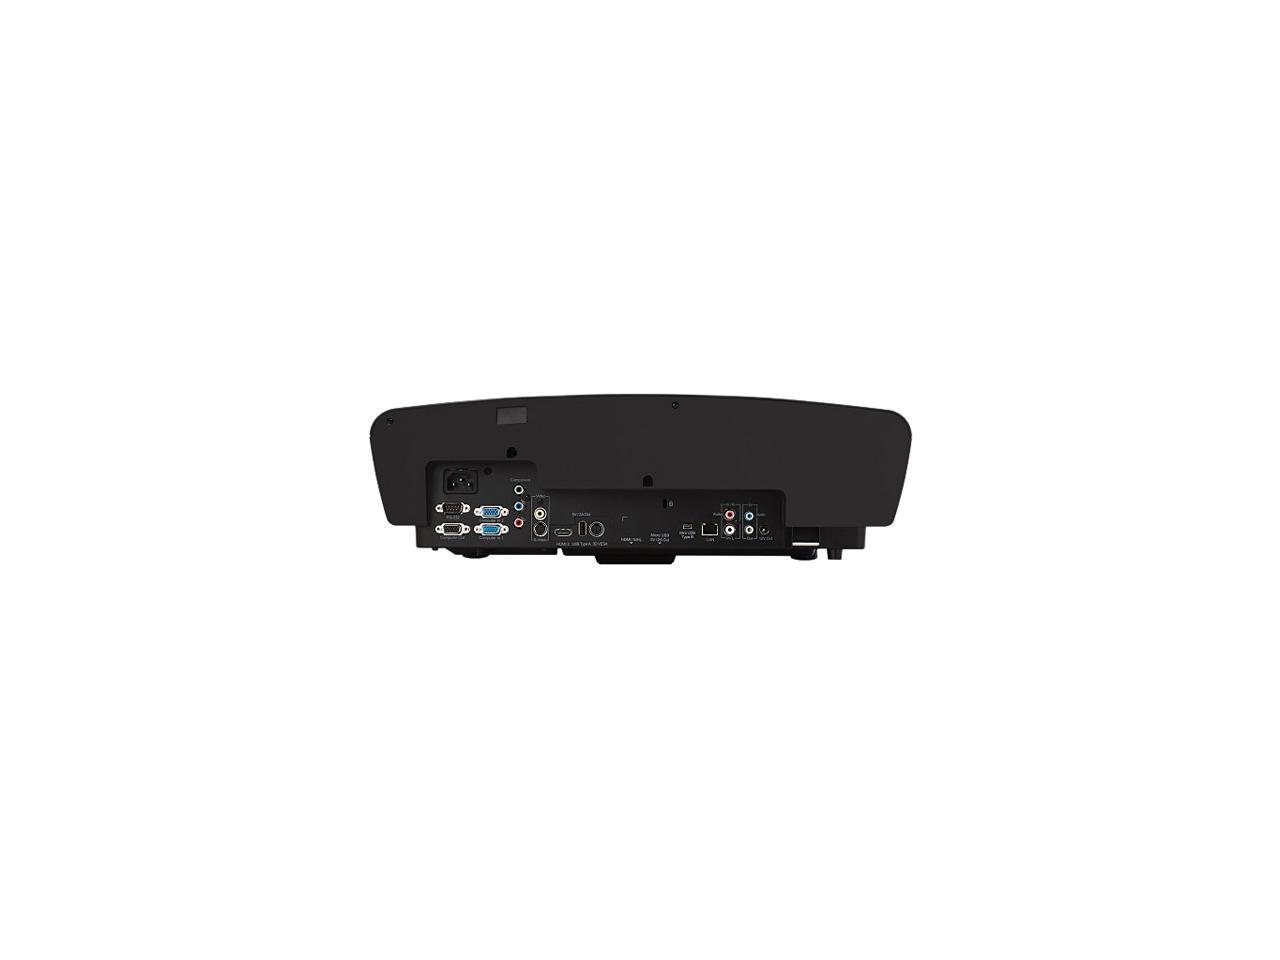 ViewSonic LS830 Black Laser 1080P DLP Projector, 1920 x 1080, 4500 ANSI Lumens, 16:9, 100000:1, HDMI, VGA, USB, Built-in Speaker